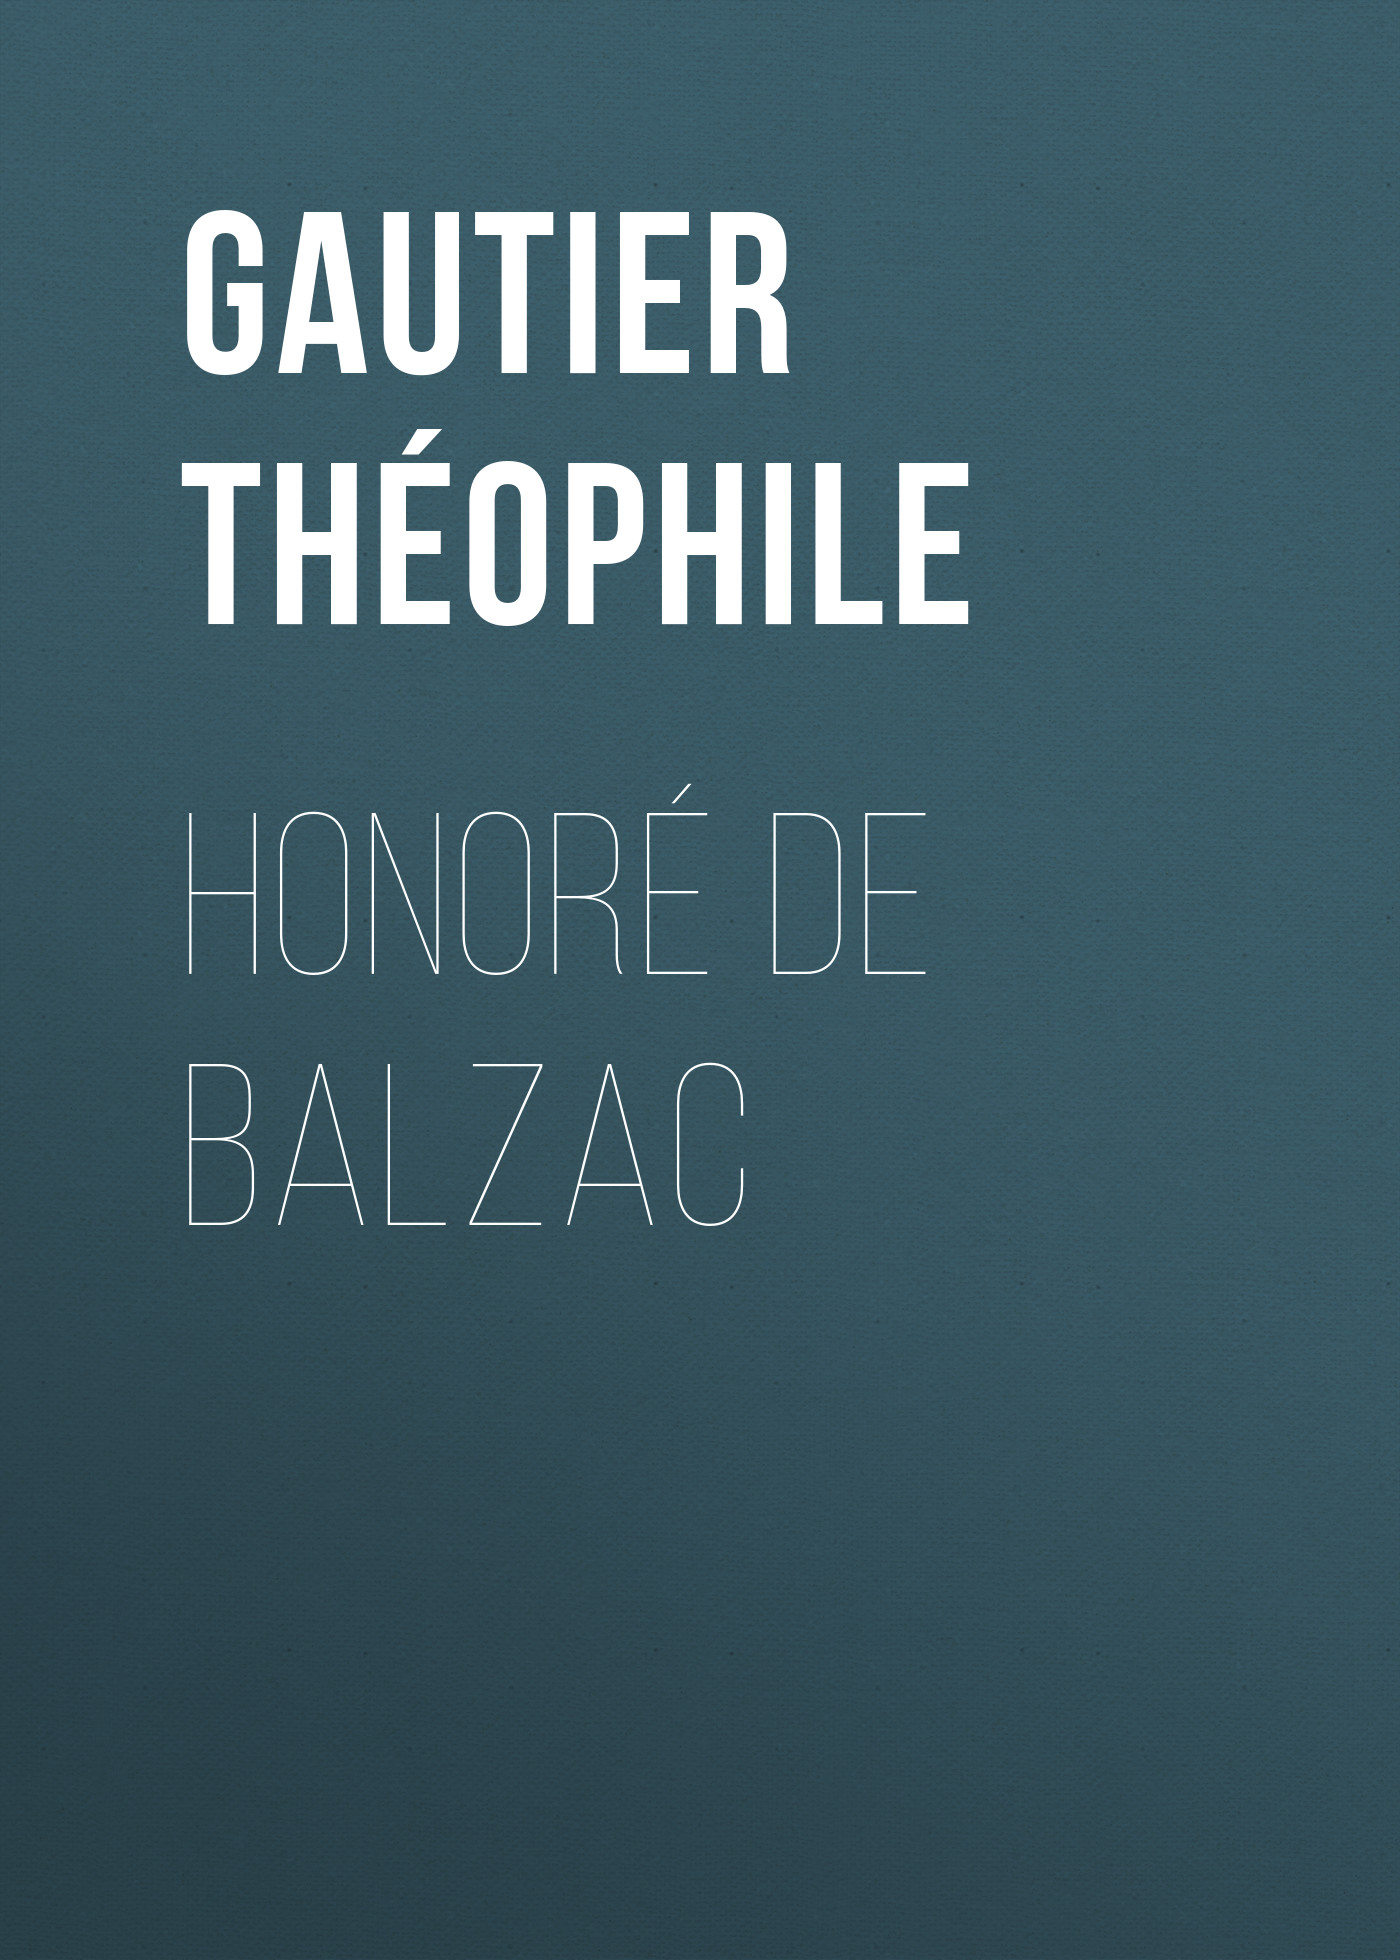 Книга Honoré de Balzac из серии , созданная Théophile Gautier, может относится к жанру Зарубежная старинная литература, Зарубежная классика. Стоимость электронной книги Honoré de Balzac с идентификатором 24859379 составляет 0 руб.